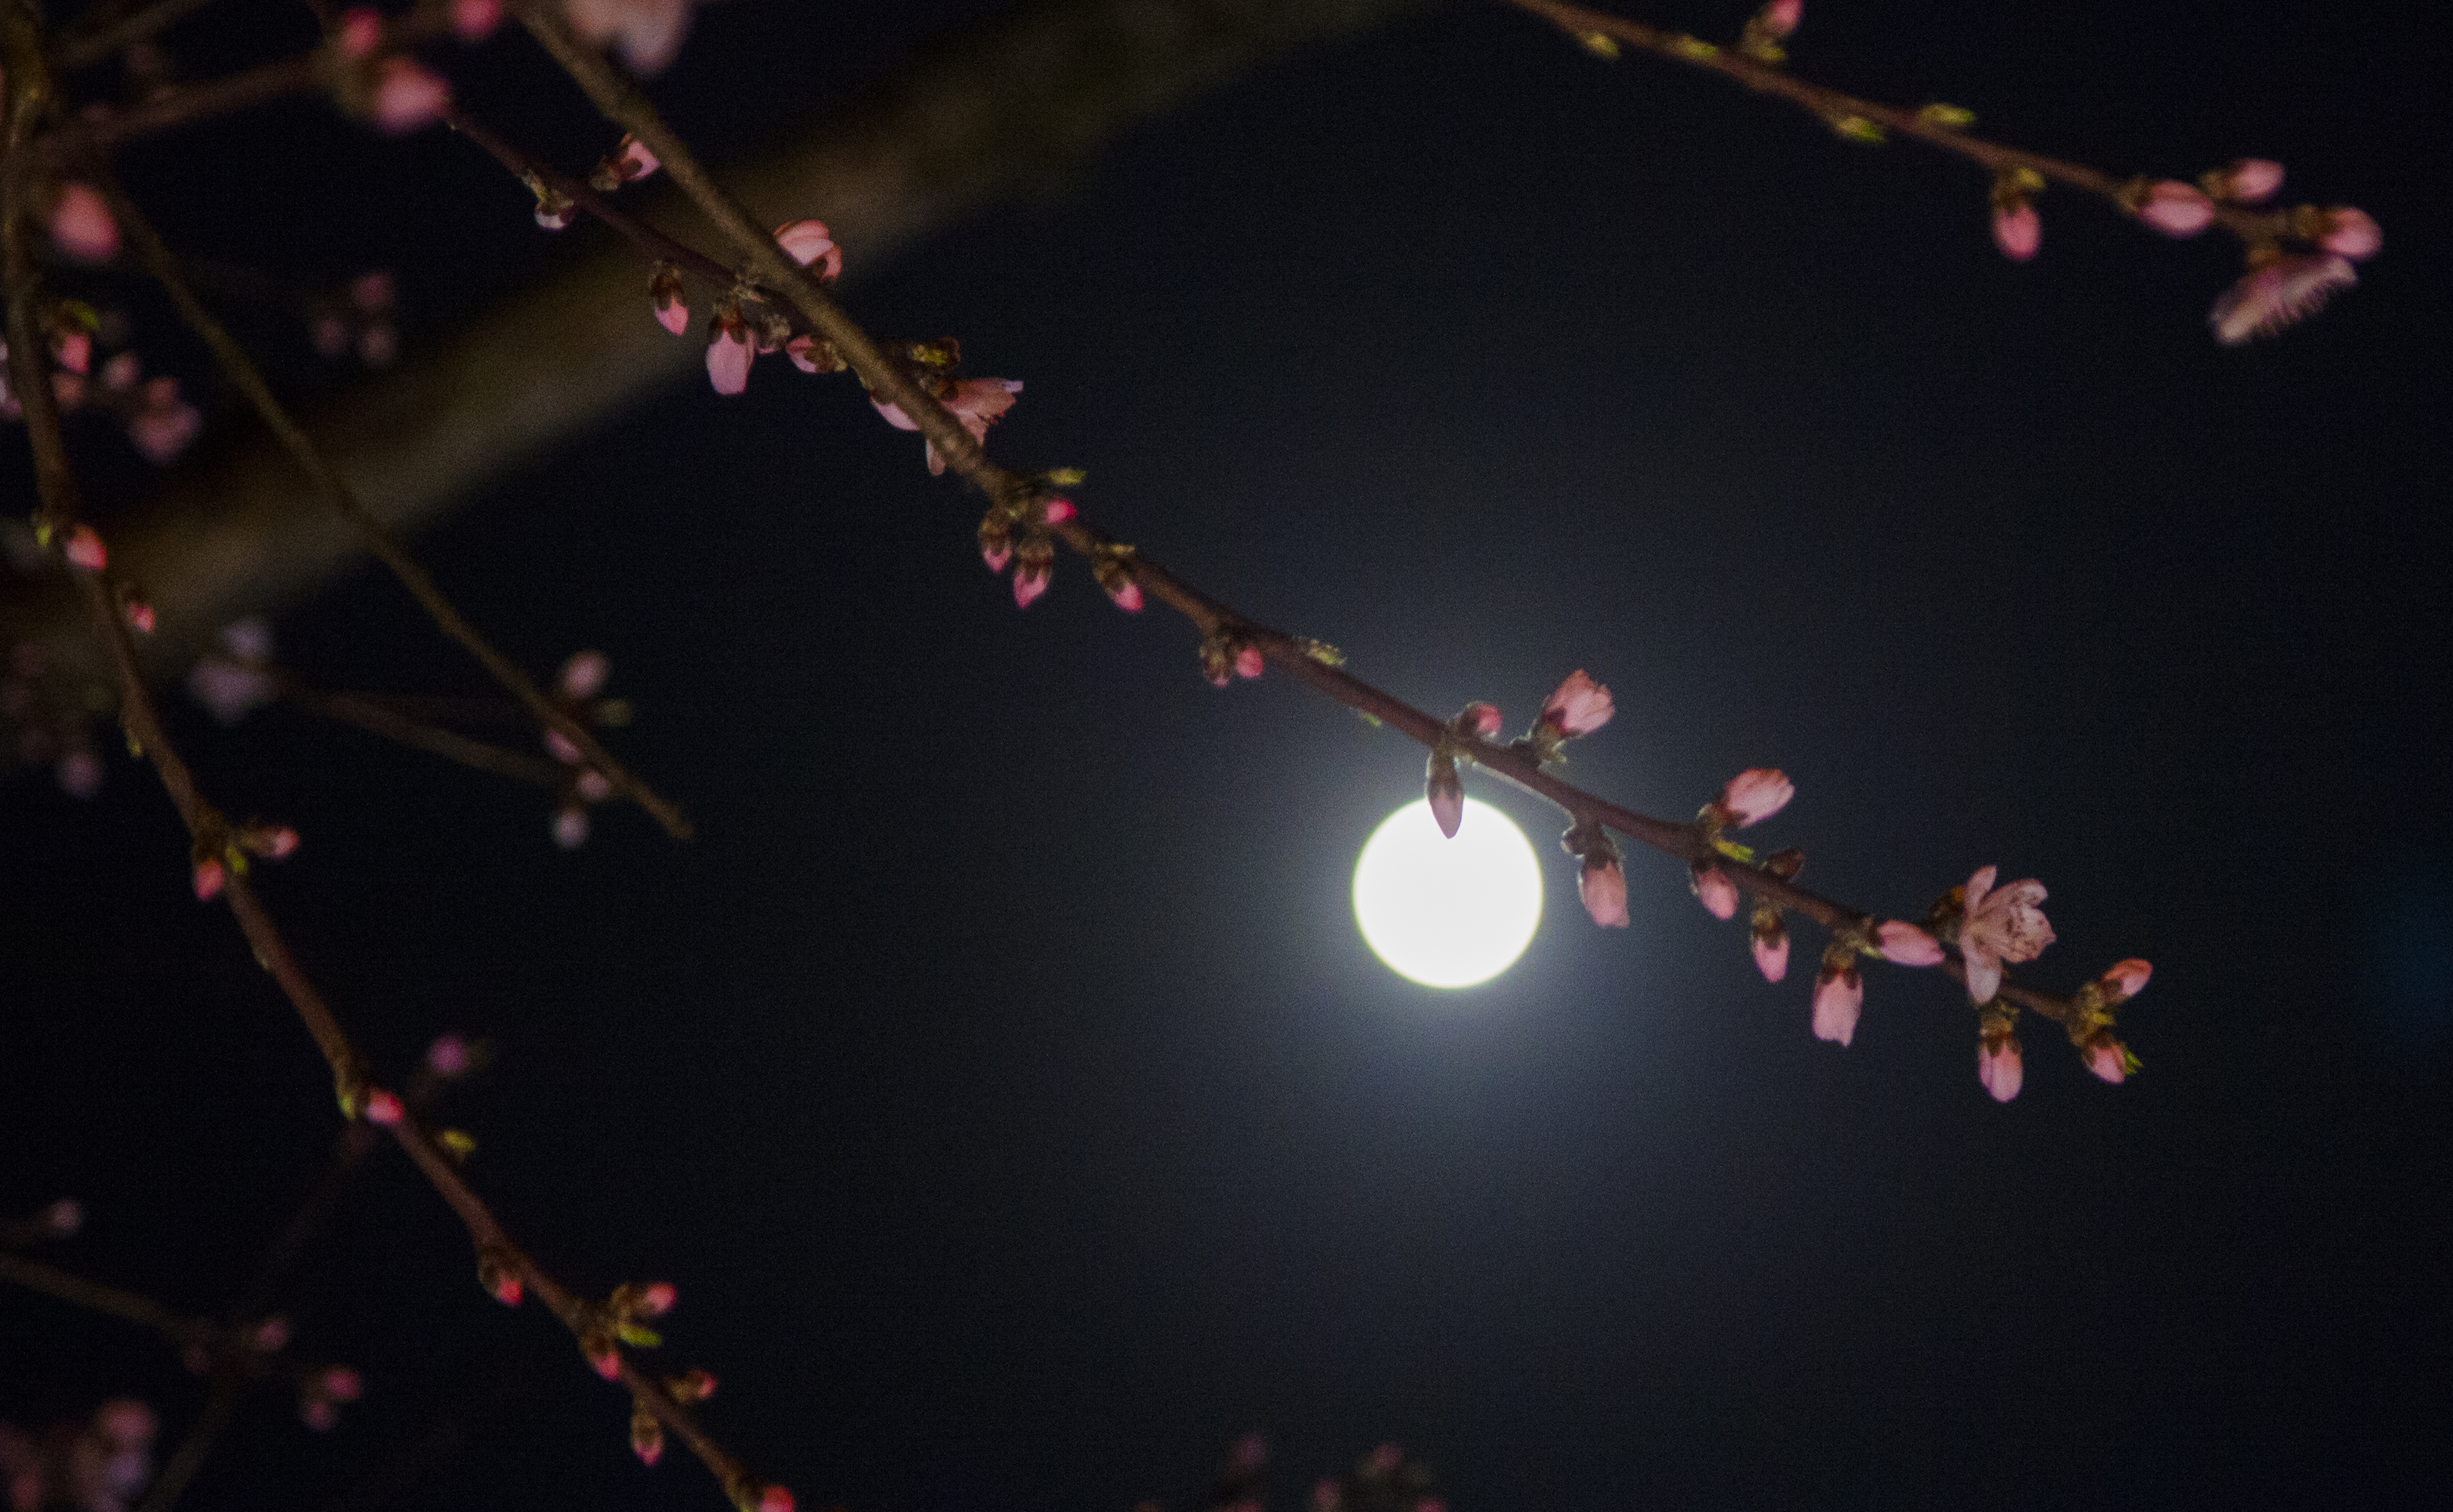 2019年3月20日贵州黔西拍摄月下桃花(超级月亮之夜)